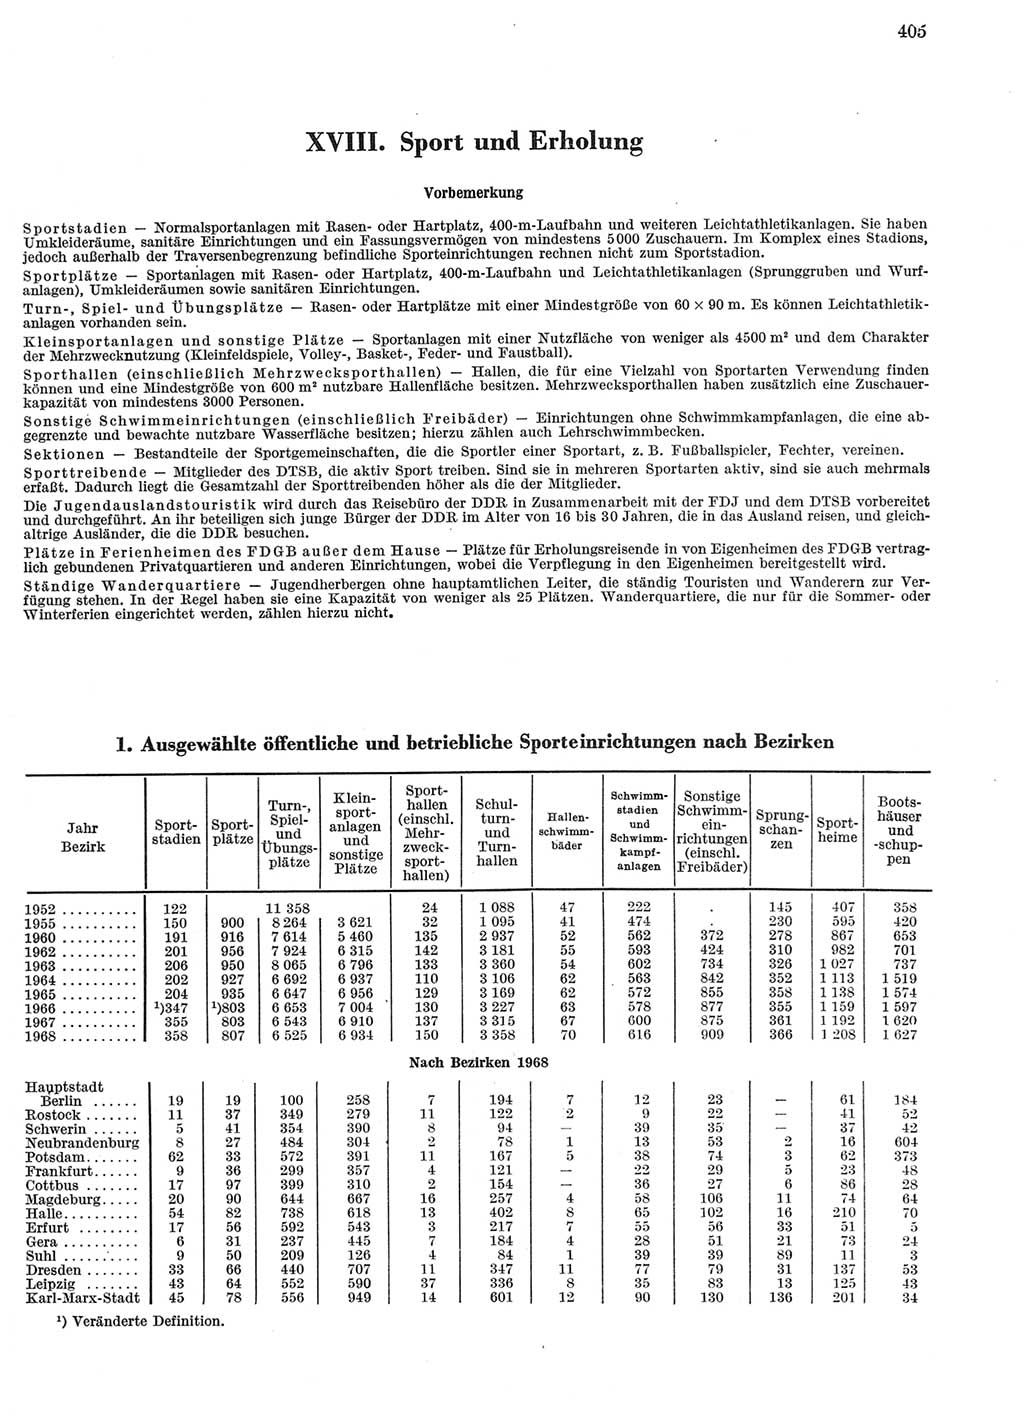 Statistisches Jahrbuch der Deutschen Demokratischen Republik (DDR) 1969, Seite 405 (Stat. Jb. DDR 1969, S. 405)